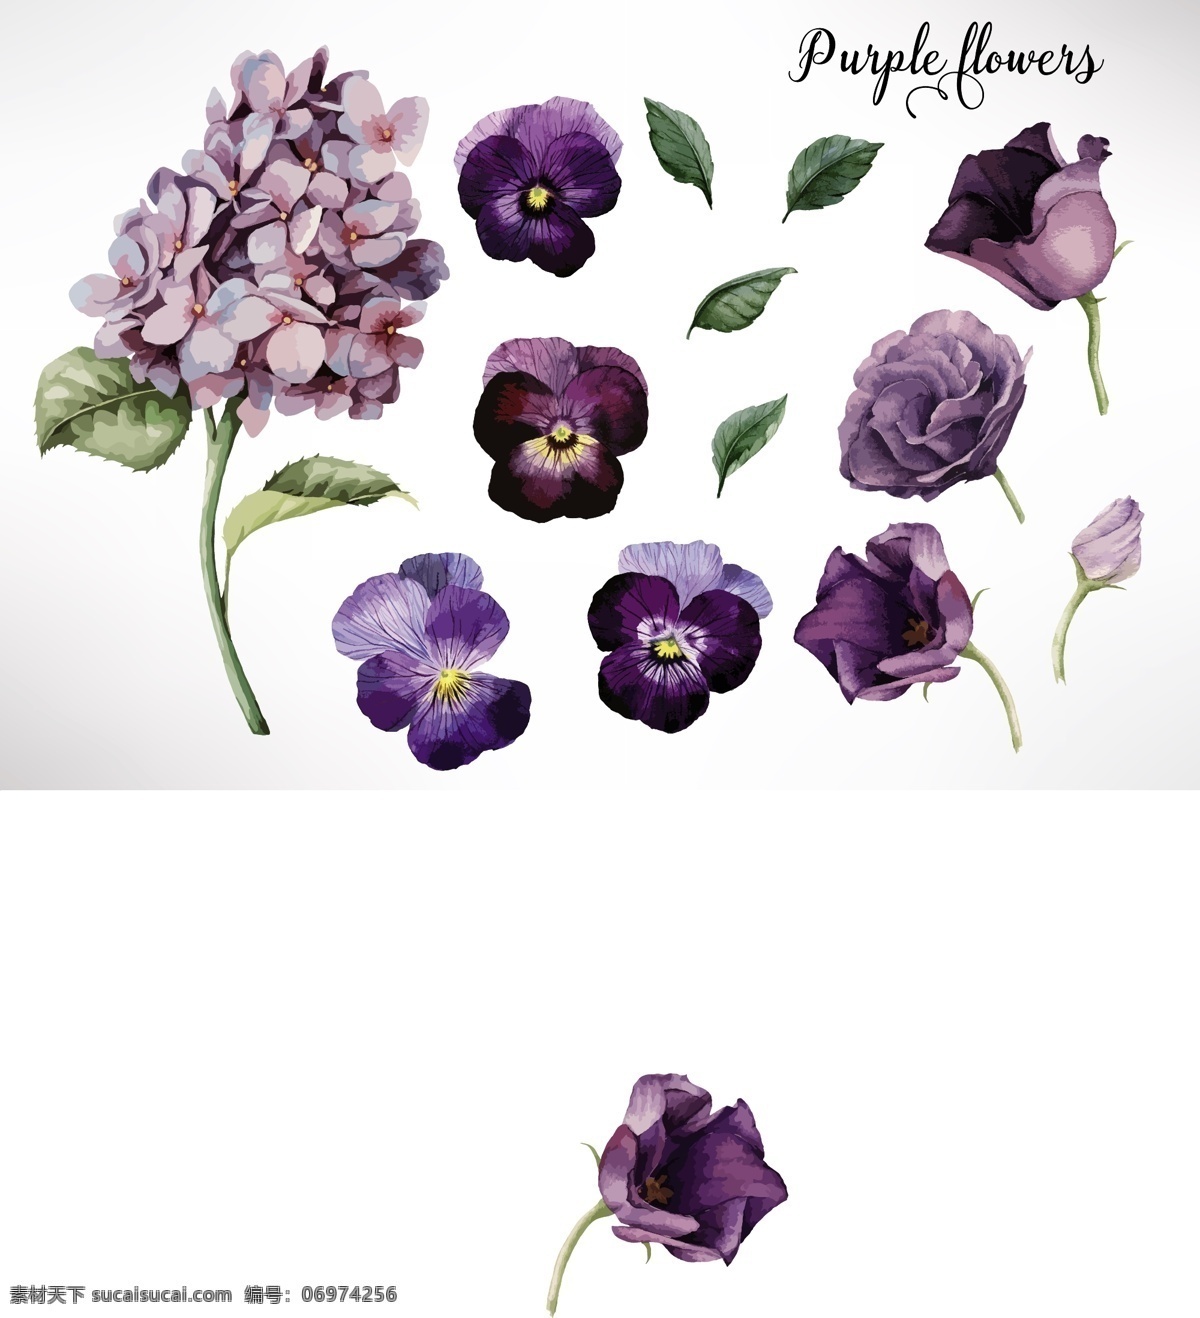 红 紫色 水彩 花卉 矢量 树叶 花朵 绣球花 植物 源文件 装饰素材 下载素材 平面设计素材